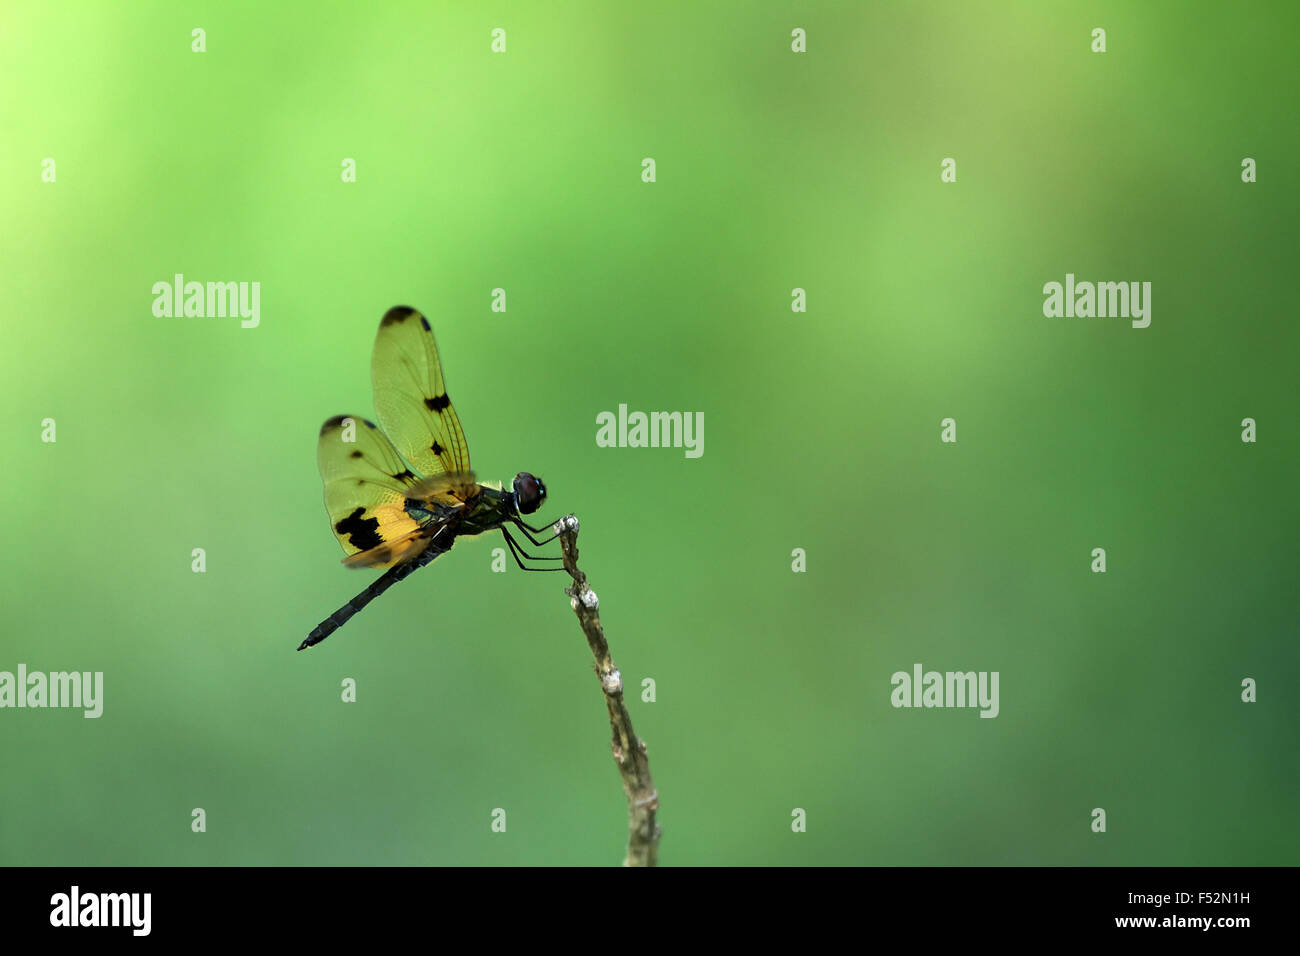 Rhyothemis variegata, commun Photo aile ou Flutterer bigarrée, est noir et jaune dragonfly on twig Banque D'Images